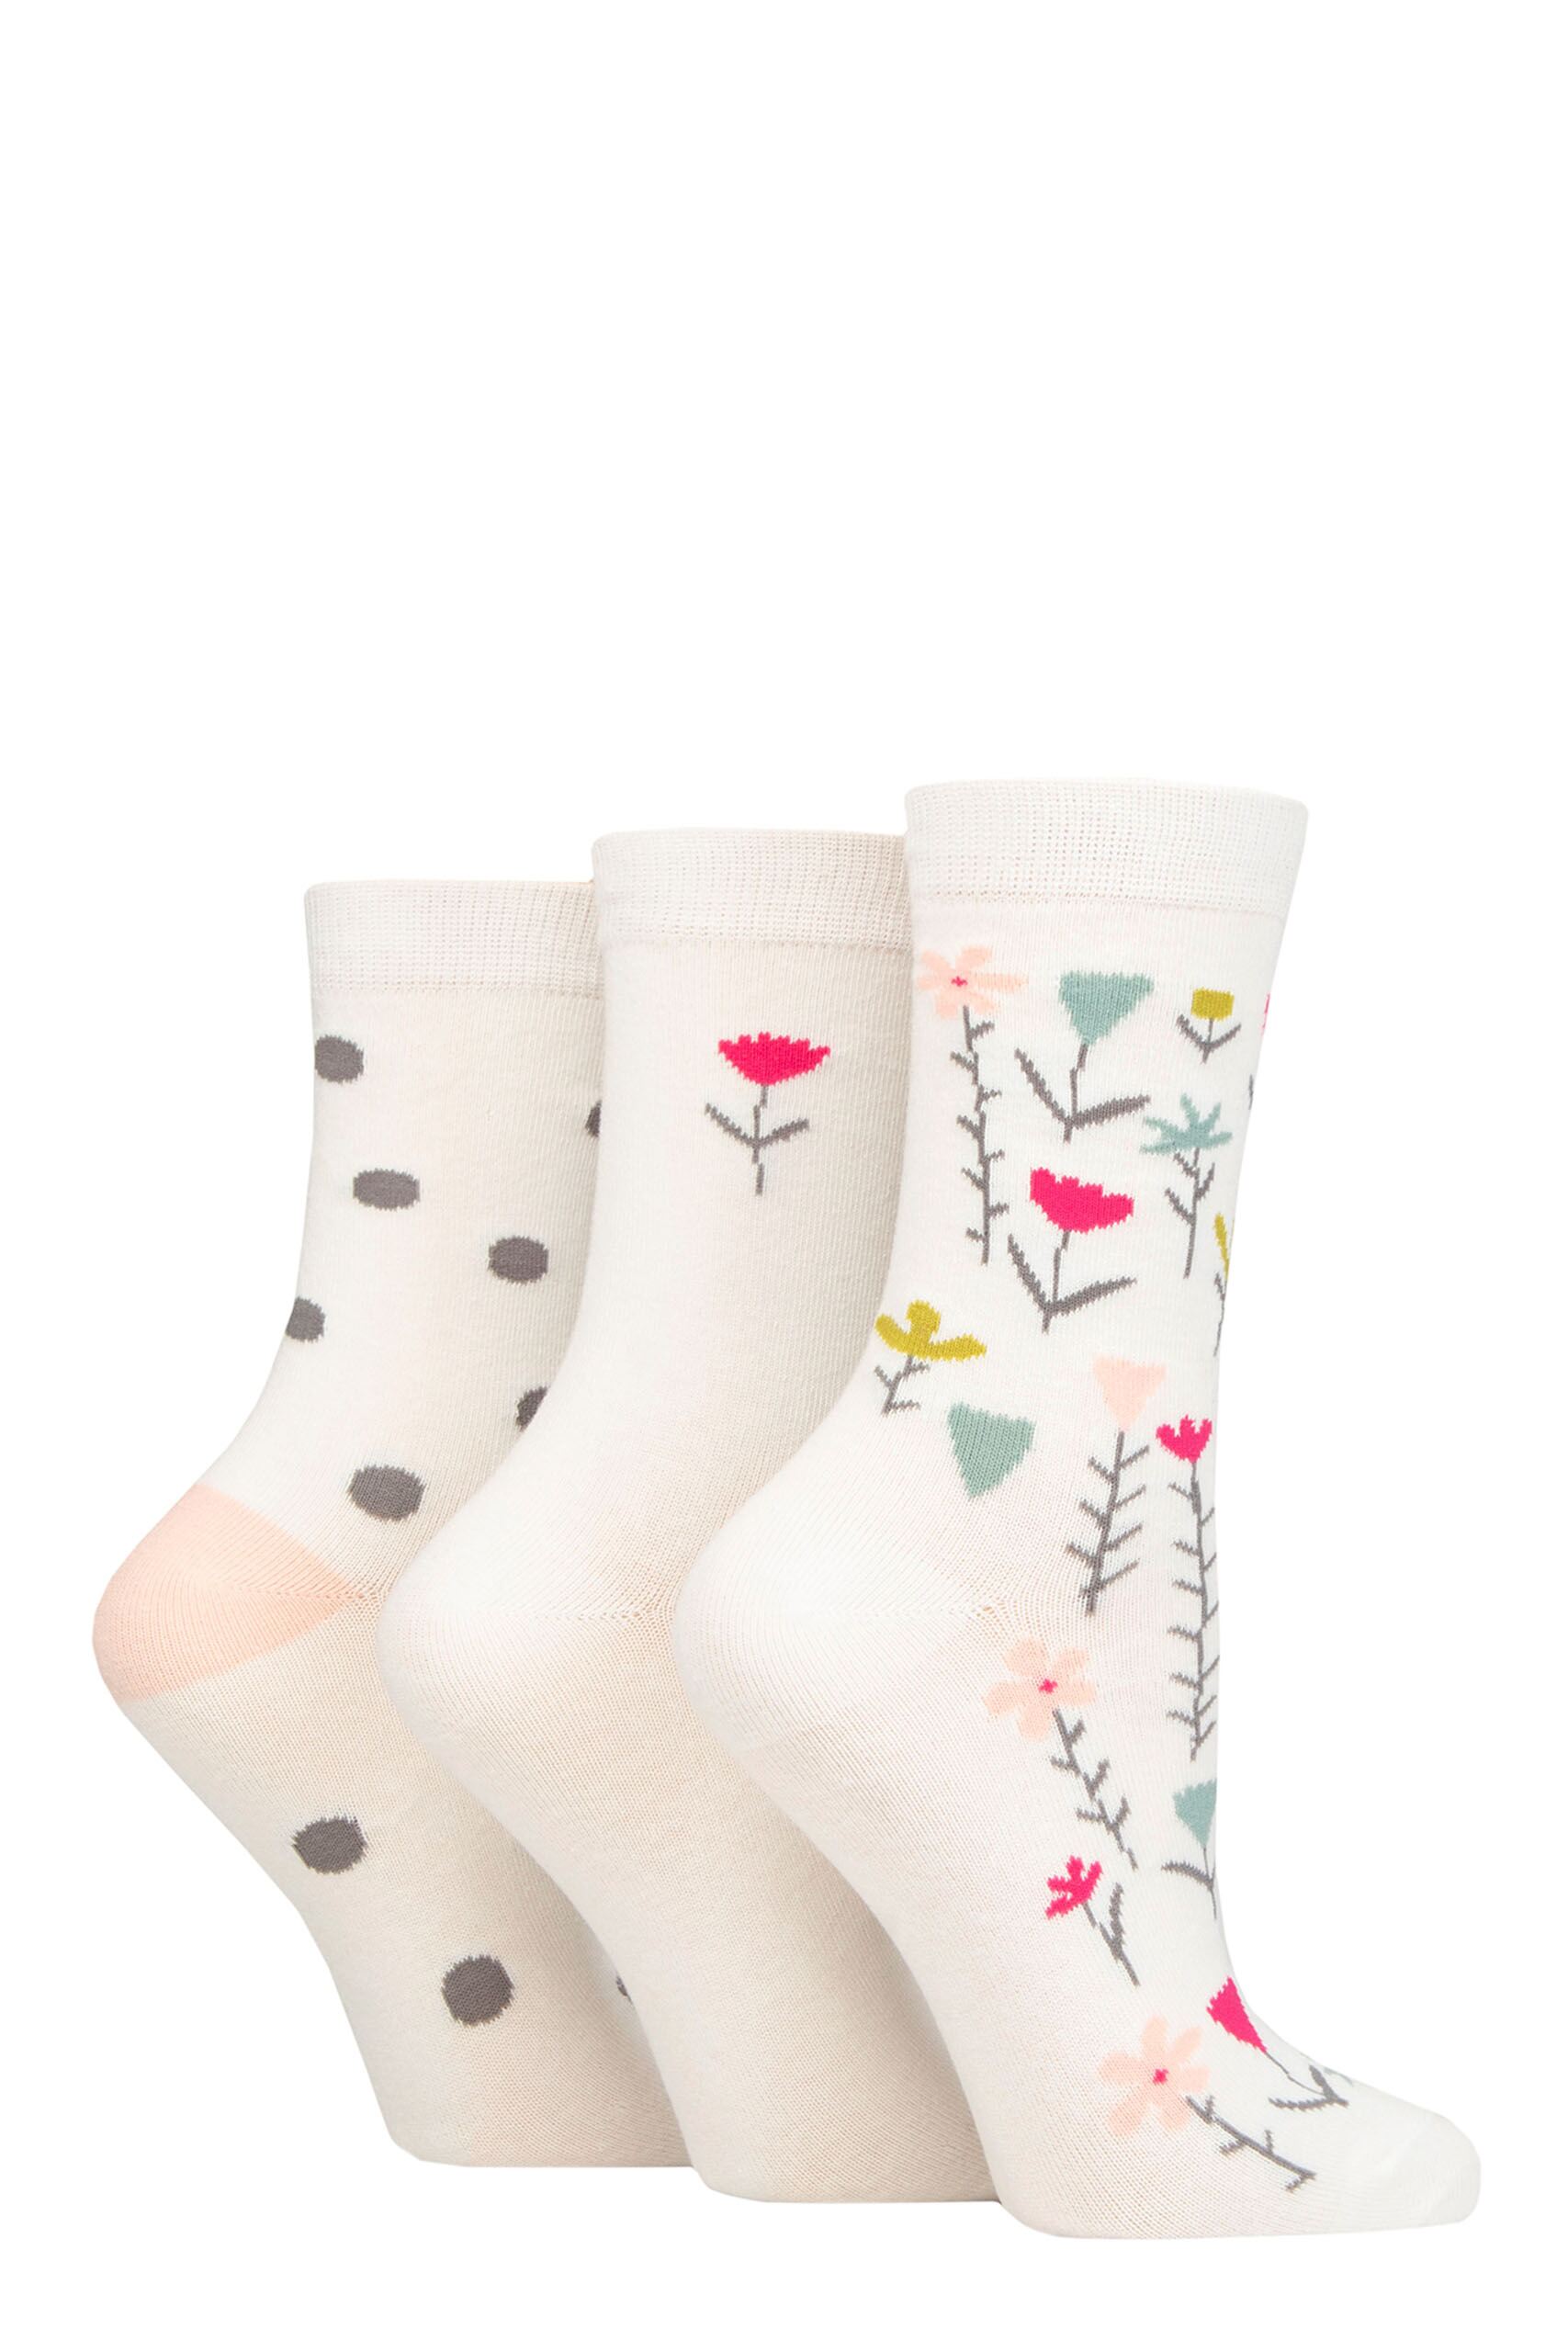 Ladies 3 Pair Caroline Gardner Patterned Cotton Socks Floral White UK 4-8